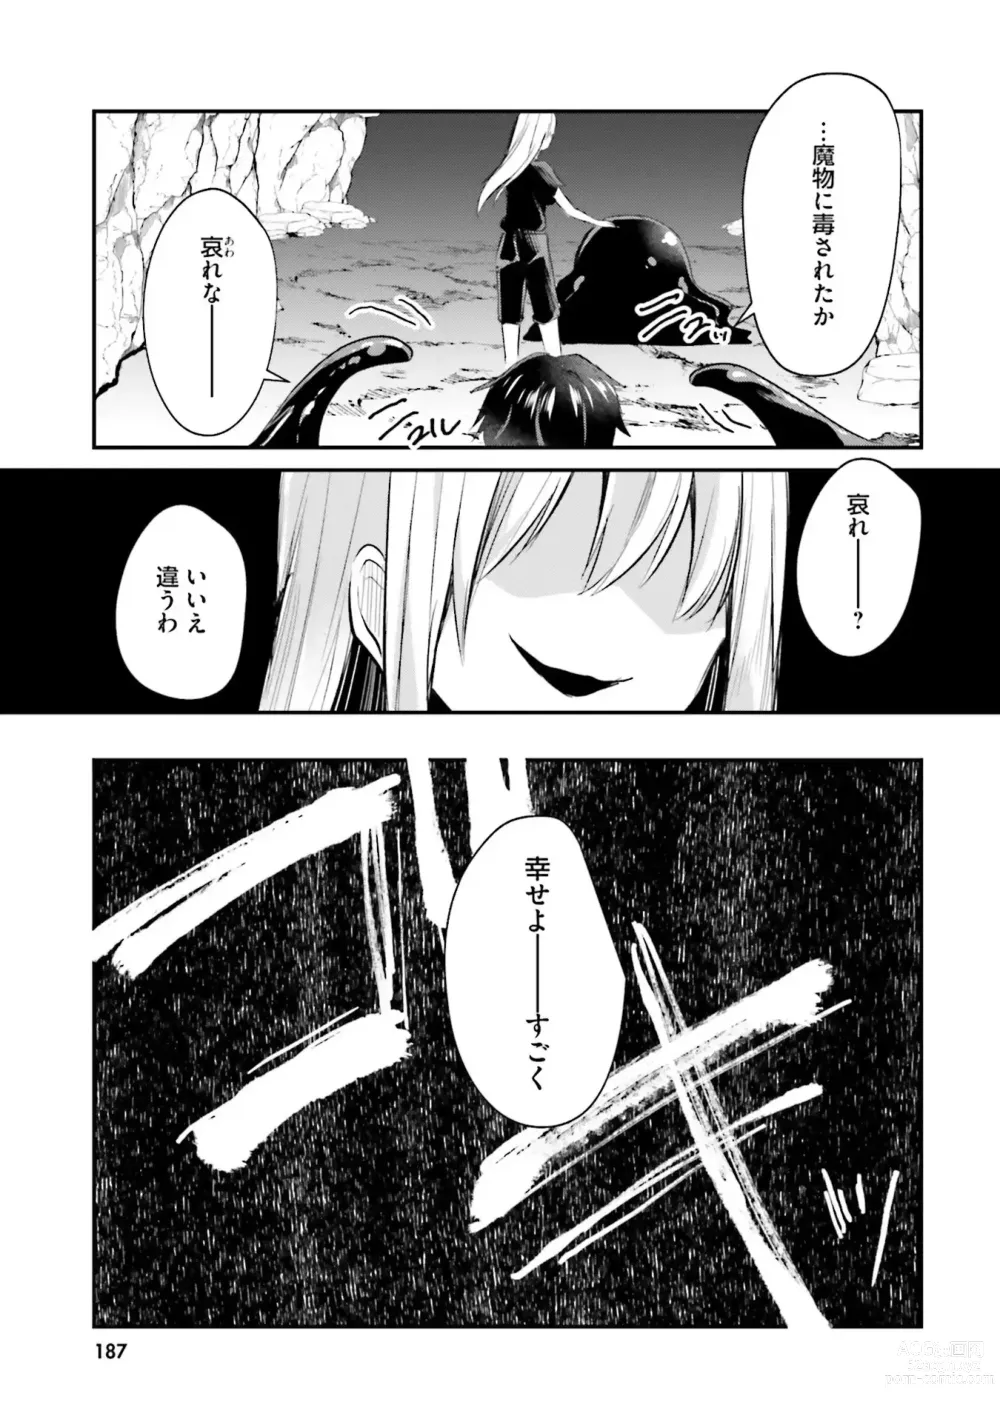 Page 189 of manga Inbi na Doukutsu no Sono Oku de